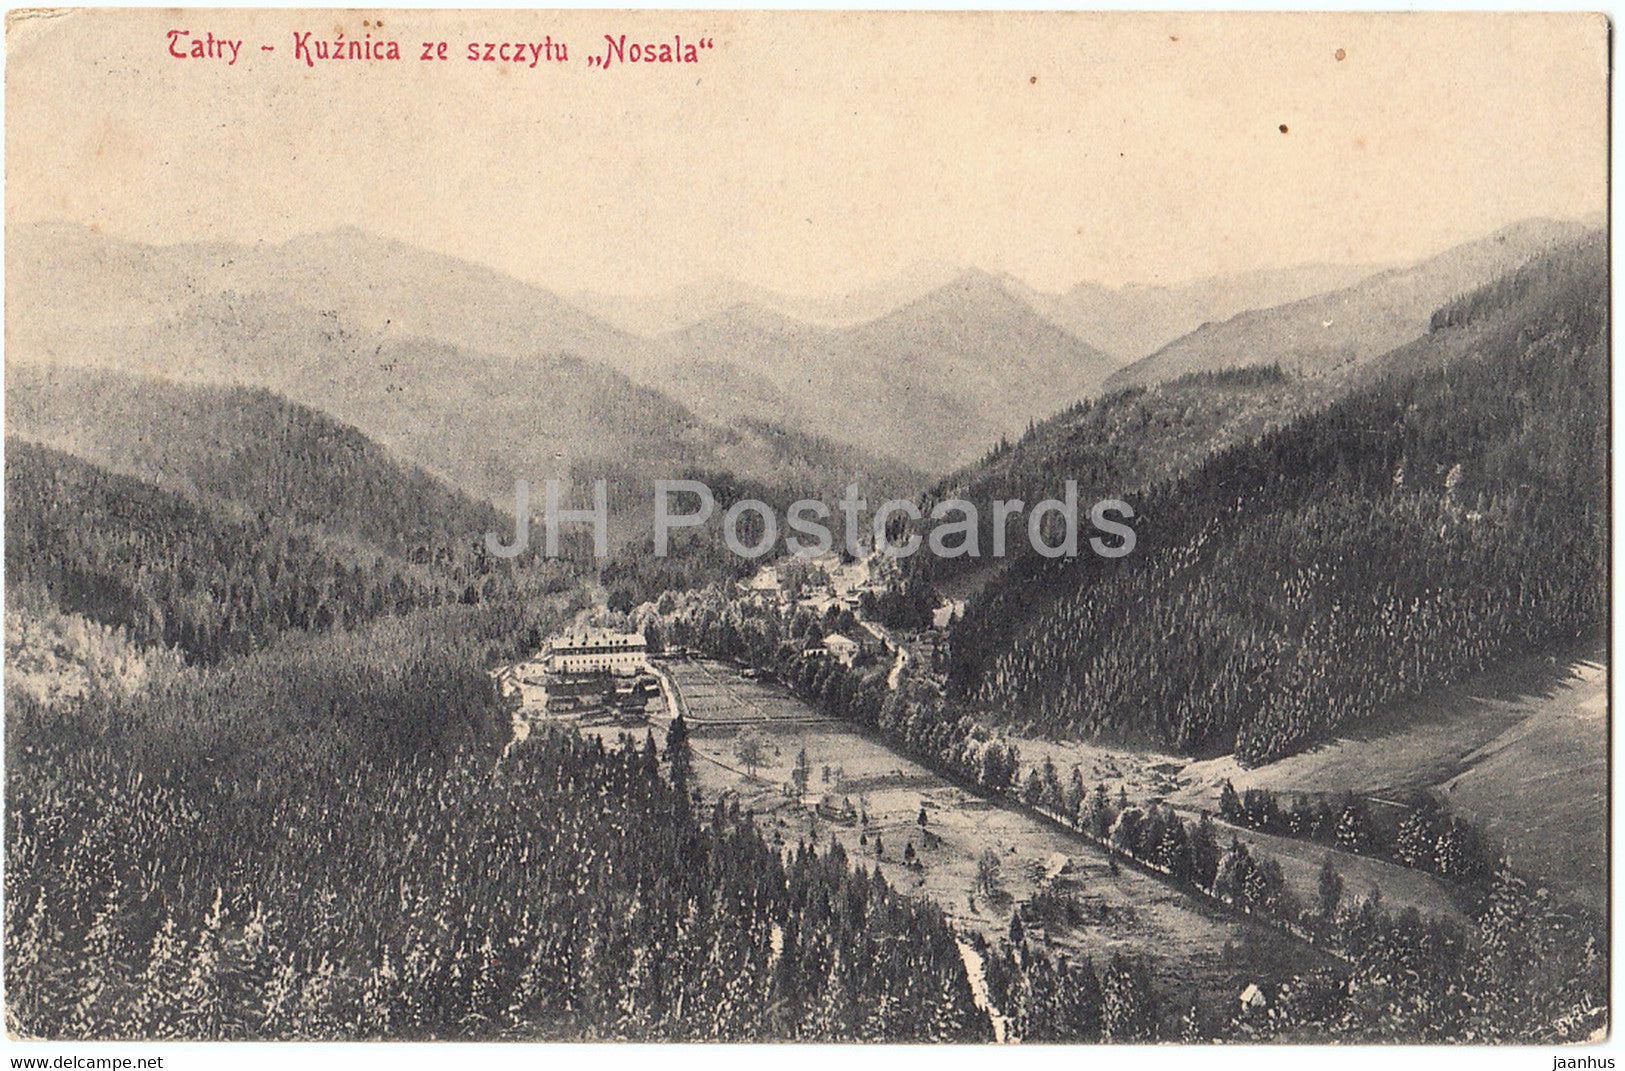 Tatry - Kuznica ze szczytu Nosala - 87 - old postcard - 1910 - Poland - used - JH Postcards